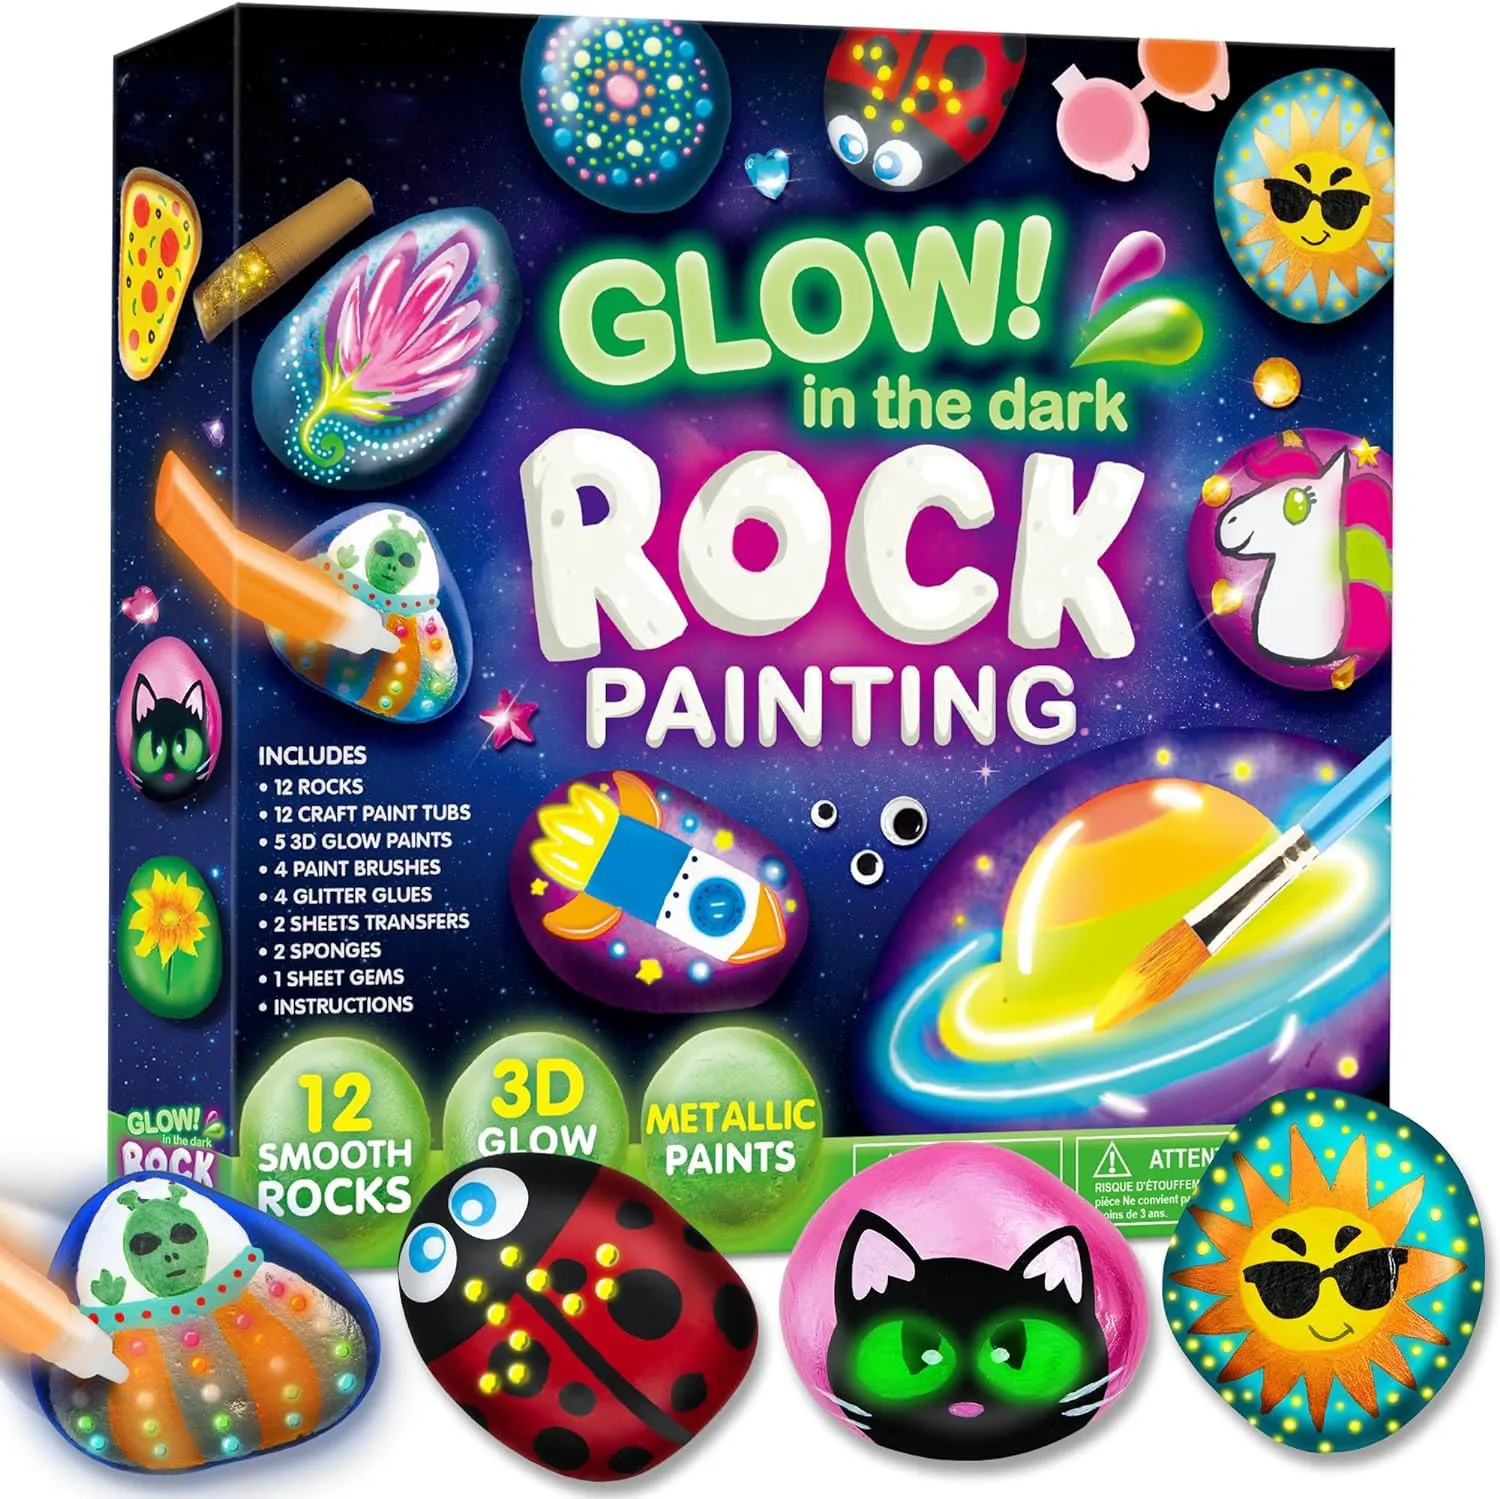 12 Rock Painting Kit- Glow In The Dark Arts And Crafts Voor Kinderen Van 6-12 Jaar Kunstbenodigdheden Voor Kinderen Knutselverf Kits,